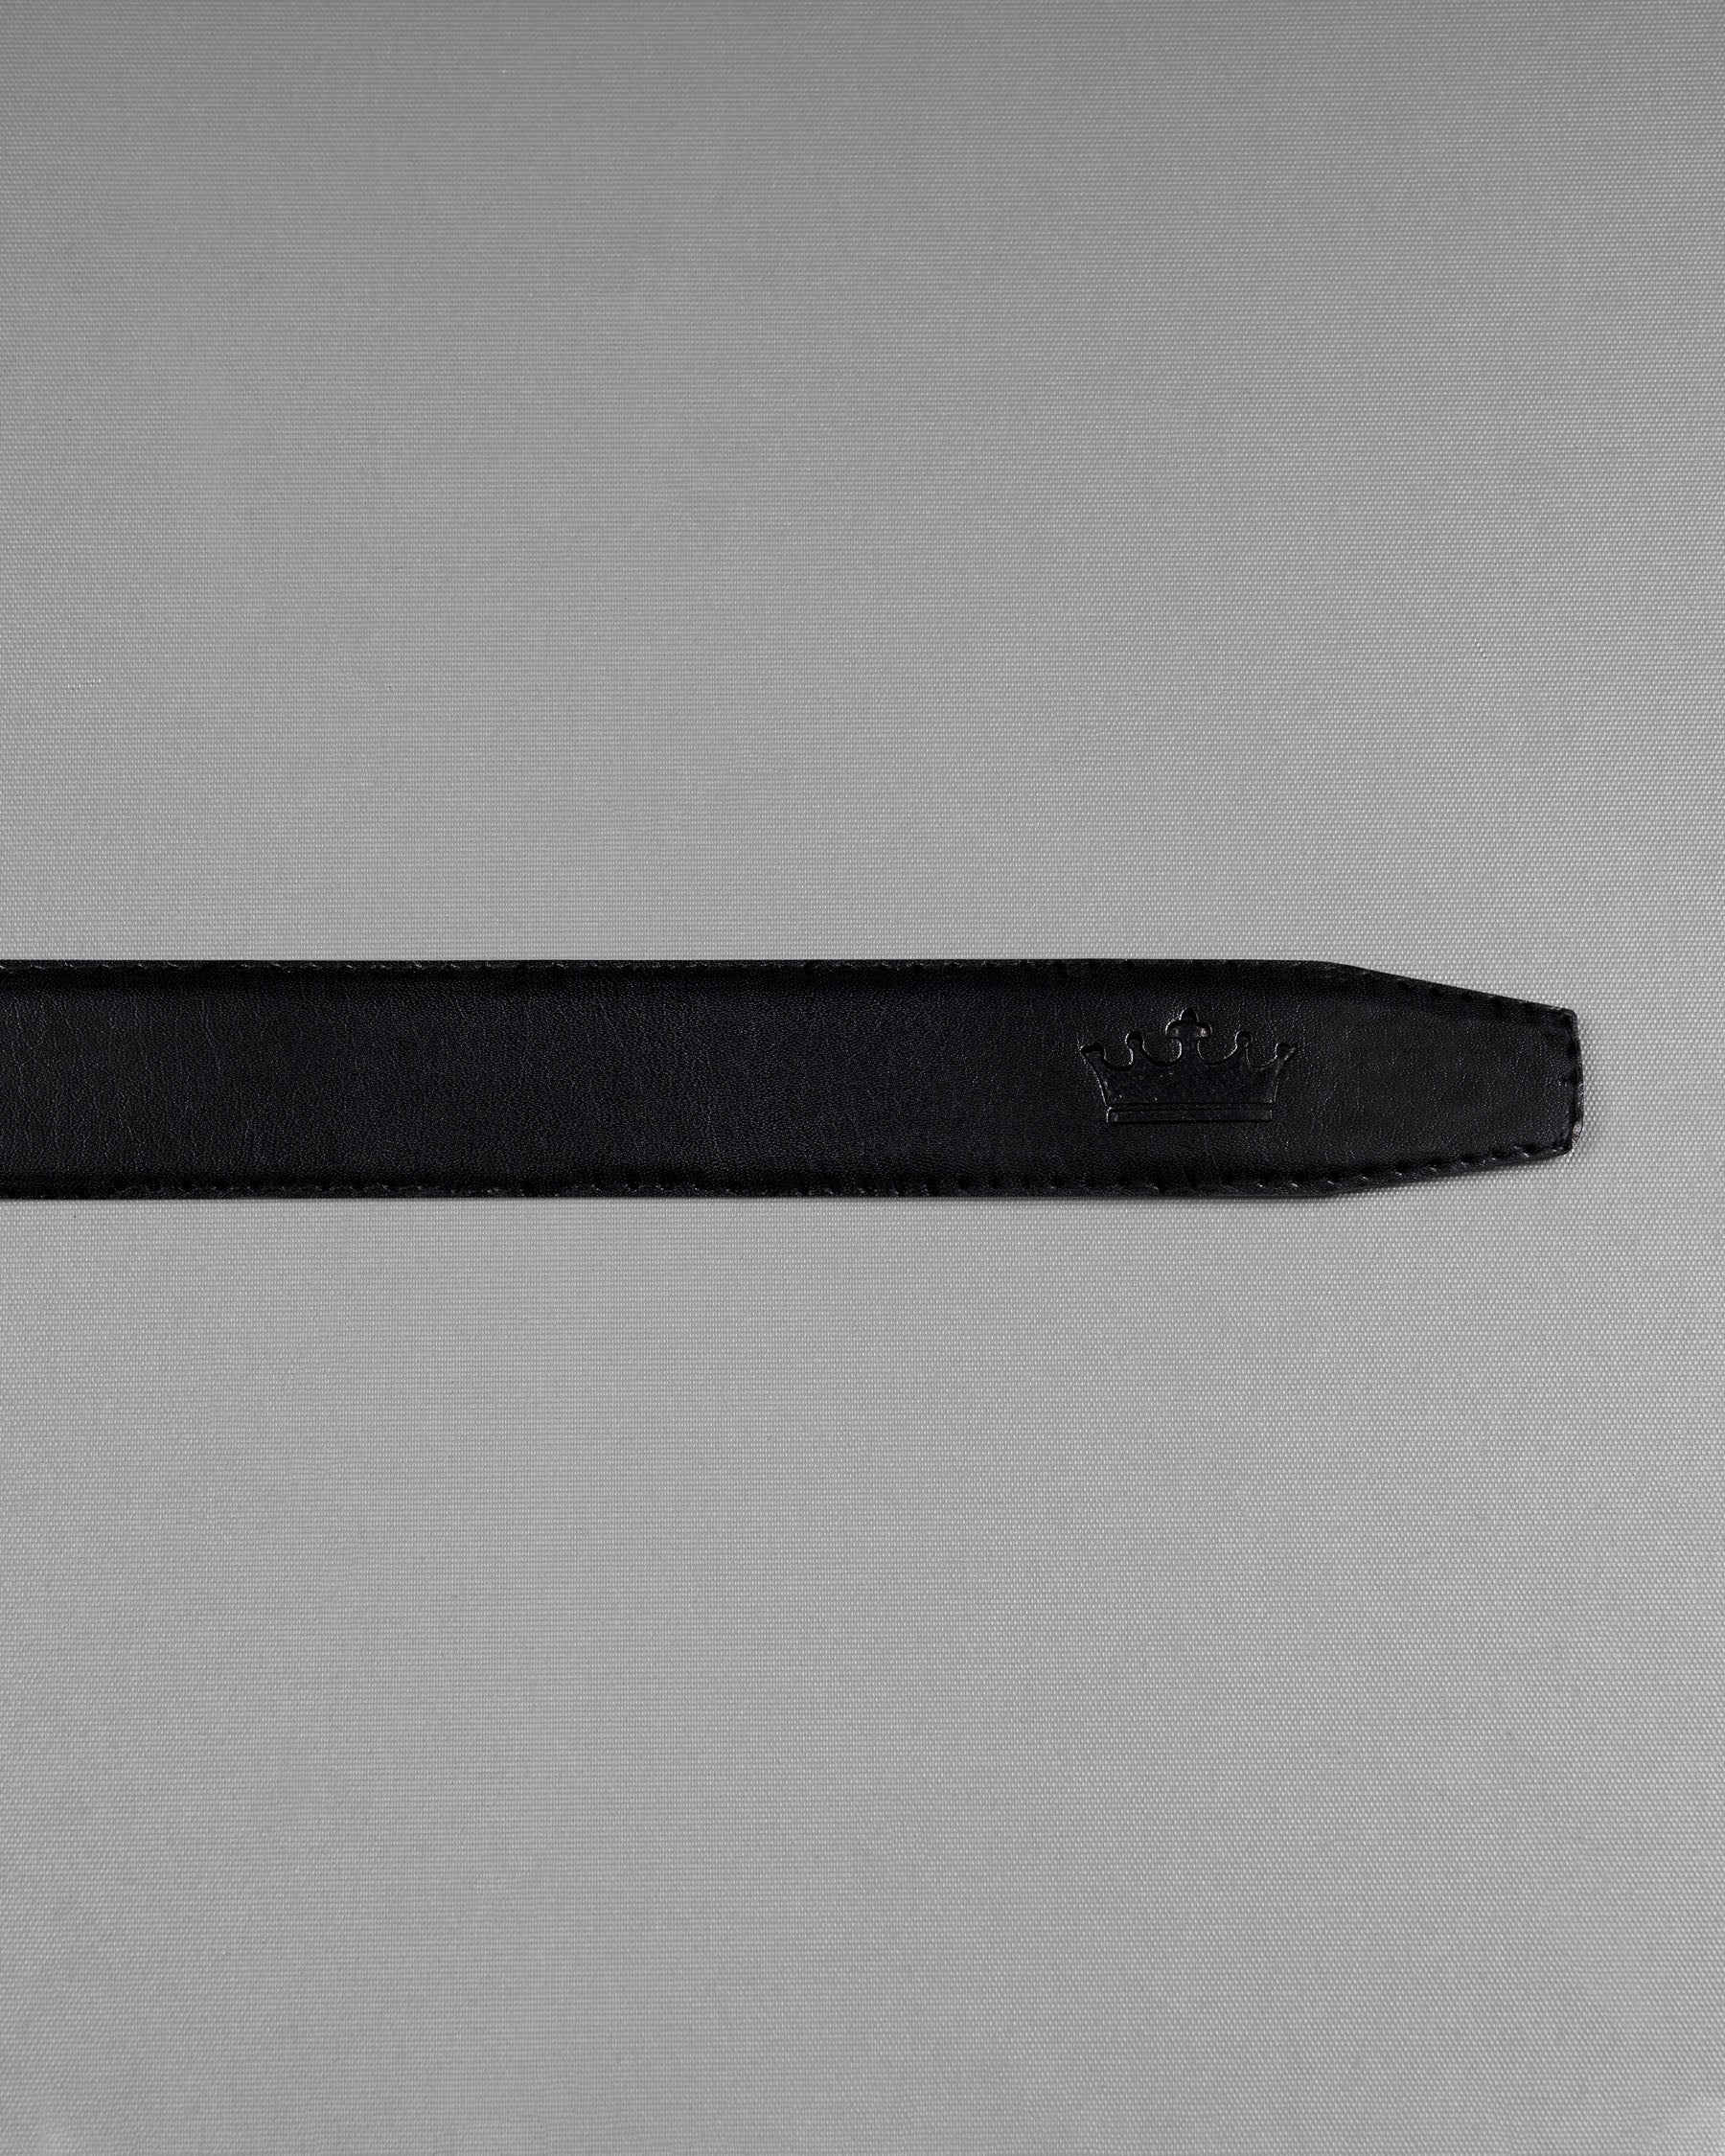 Glossy Black wave Patterned buckle No hole Reversible jade Black and Brown Vegan Leather Handcrafted Belt BT035-28, BT035-30, BT035-32, BT035-34, BT035-36, BT035-38